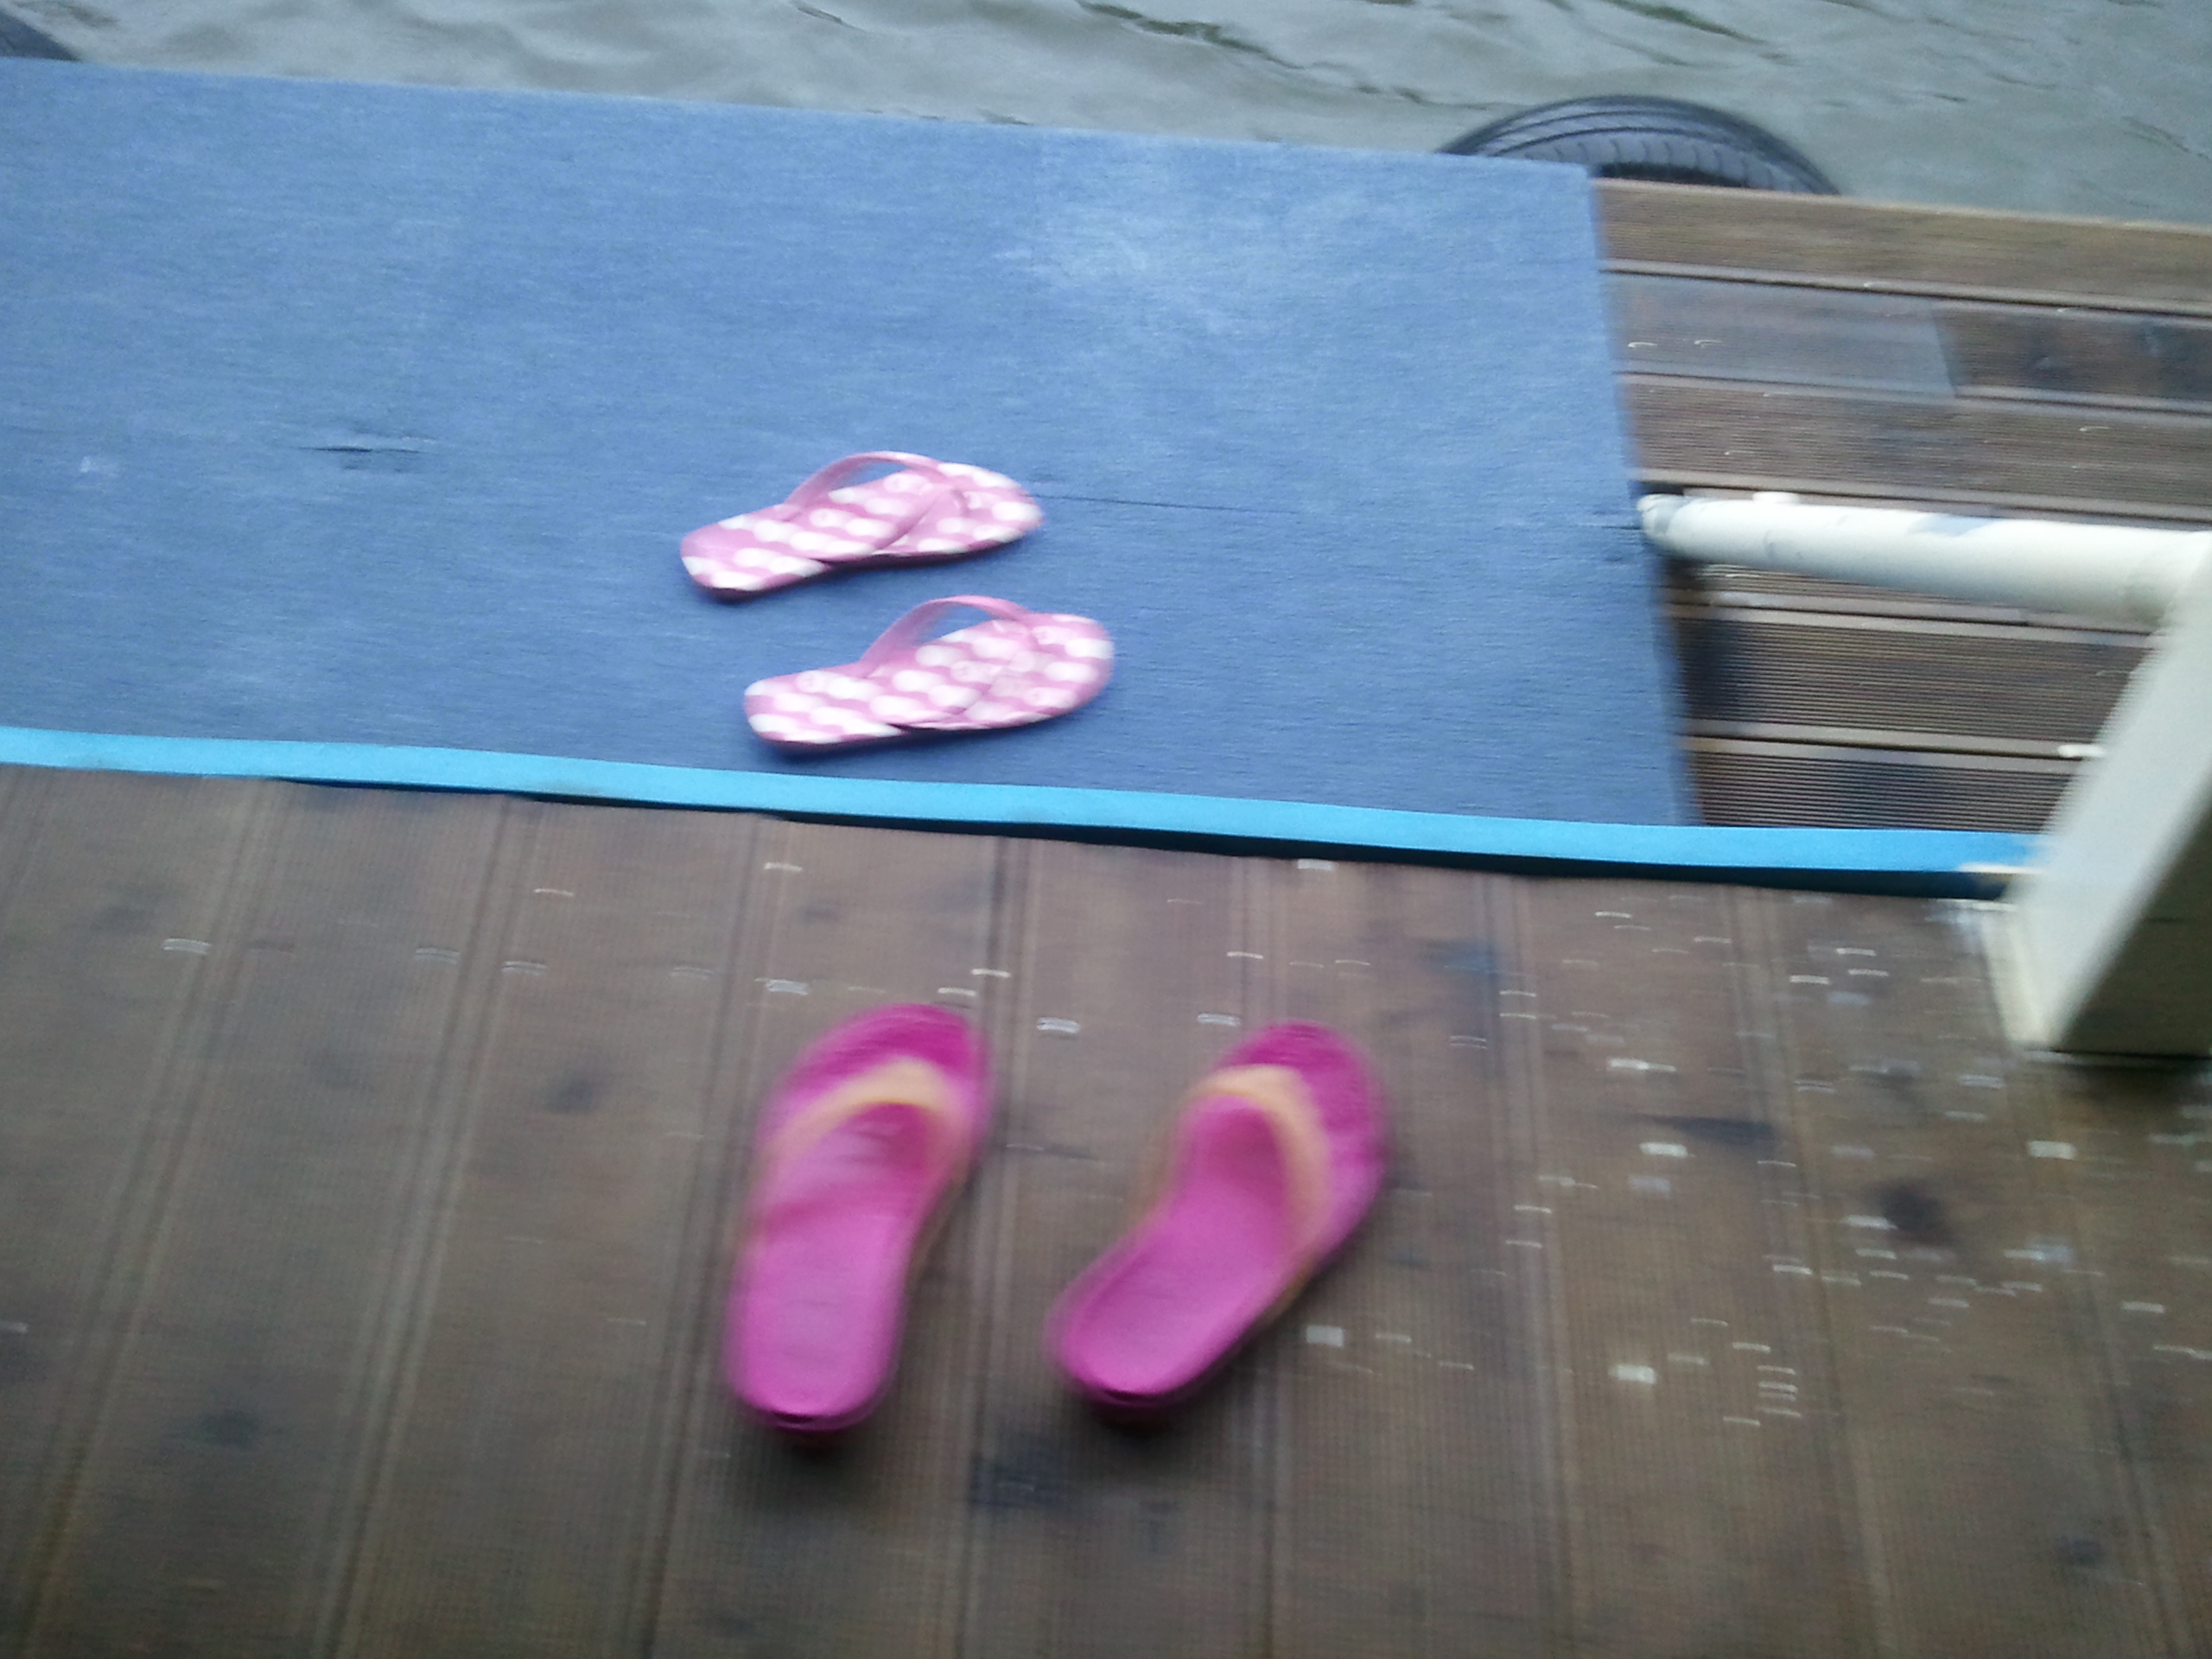 2012-08-12 18.41.04.jpg : 신발의 주인을 청평워터피아가 찾고 있습니다 ㅋ